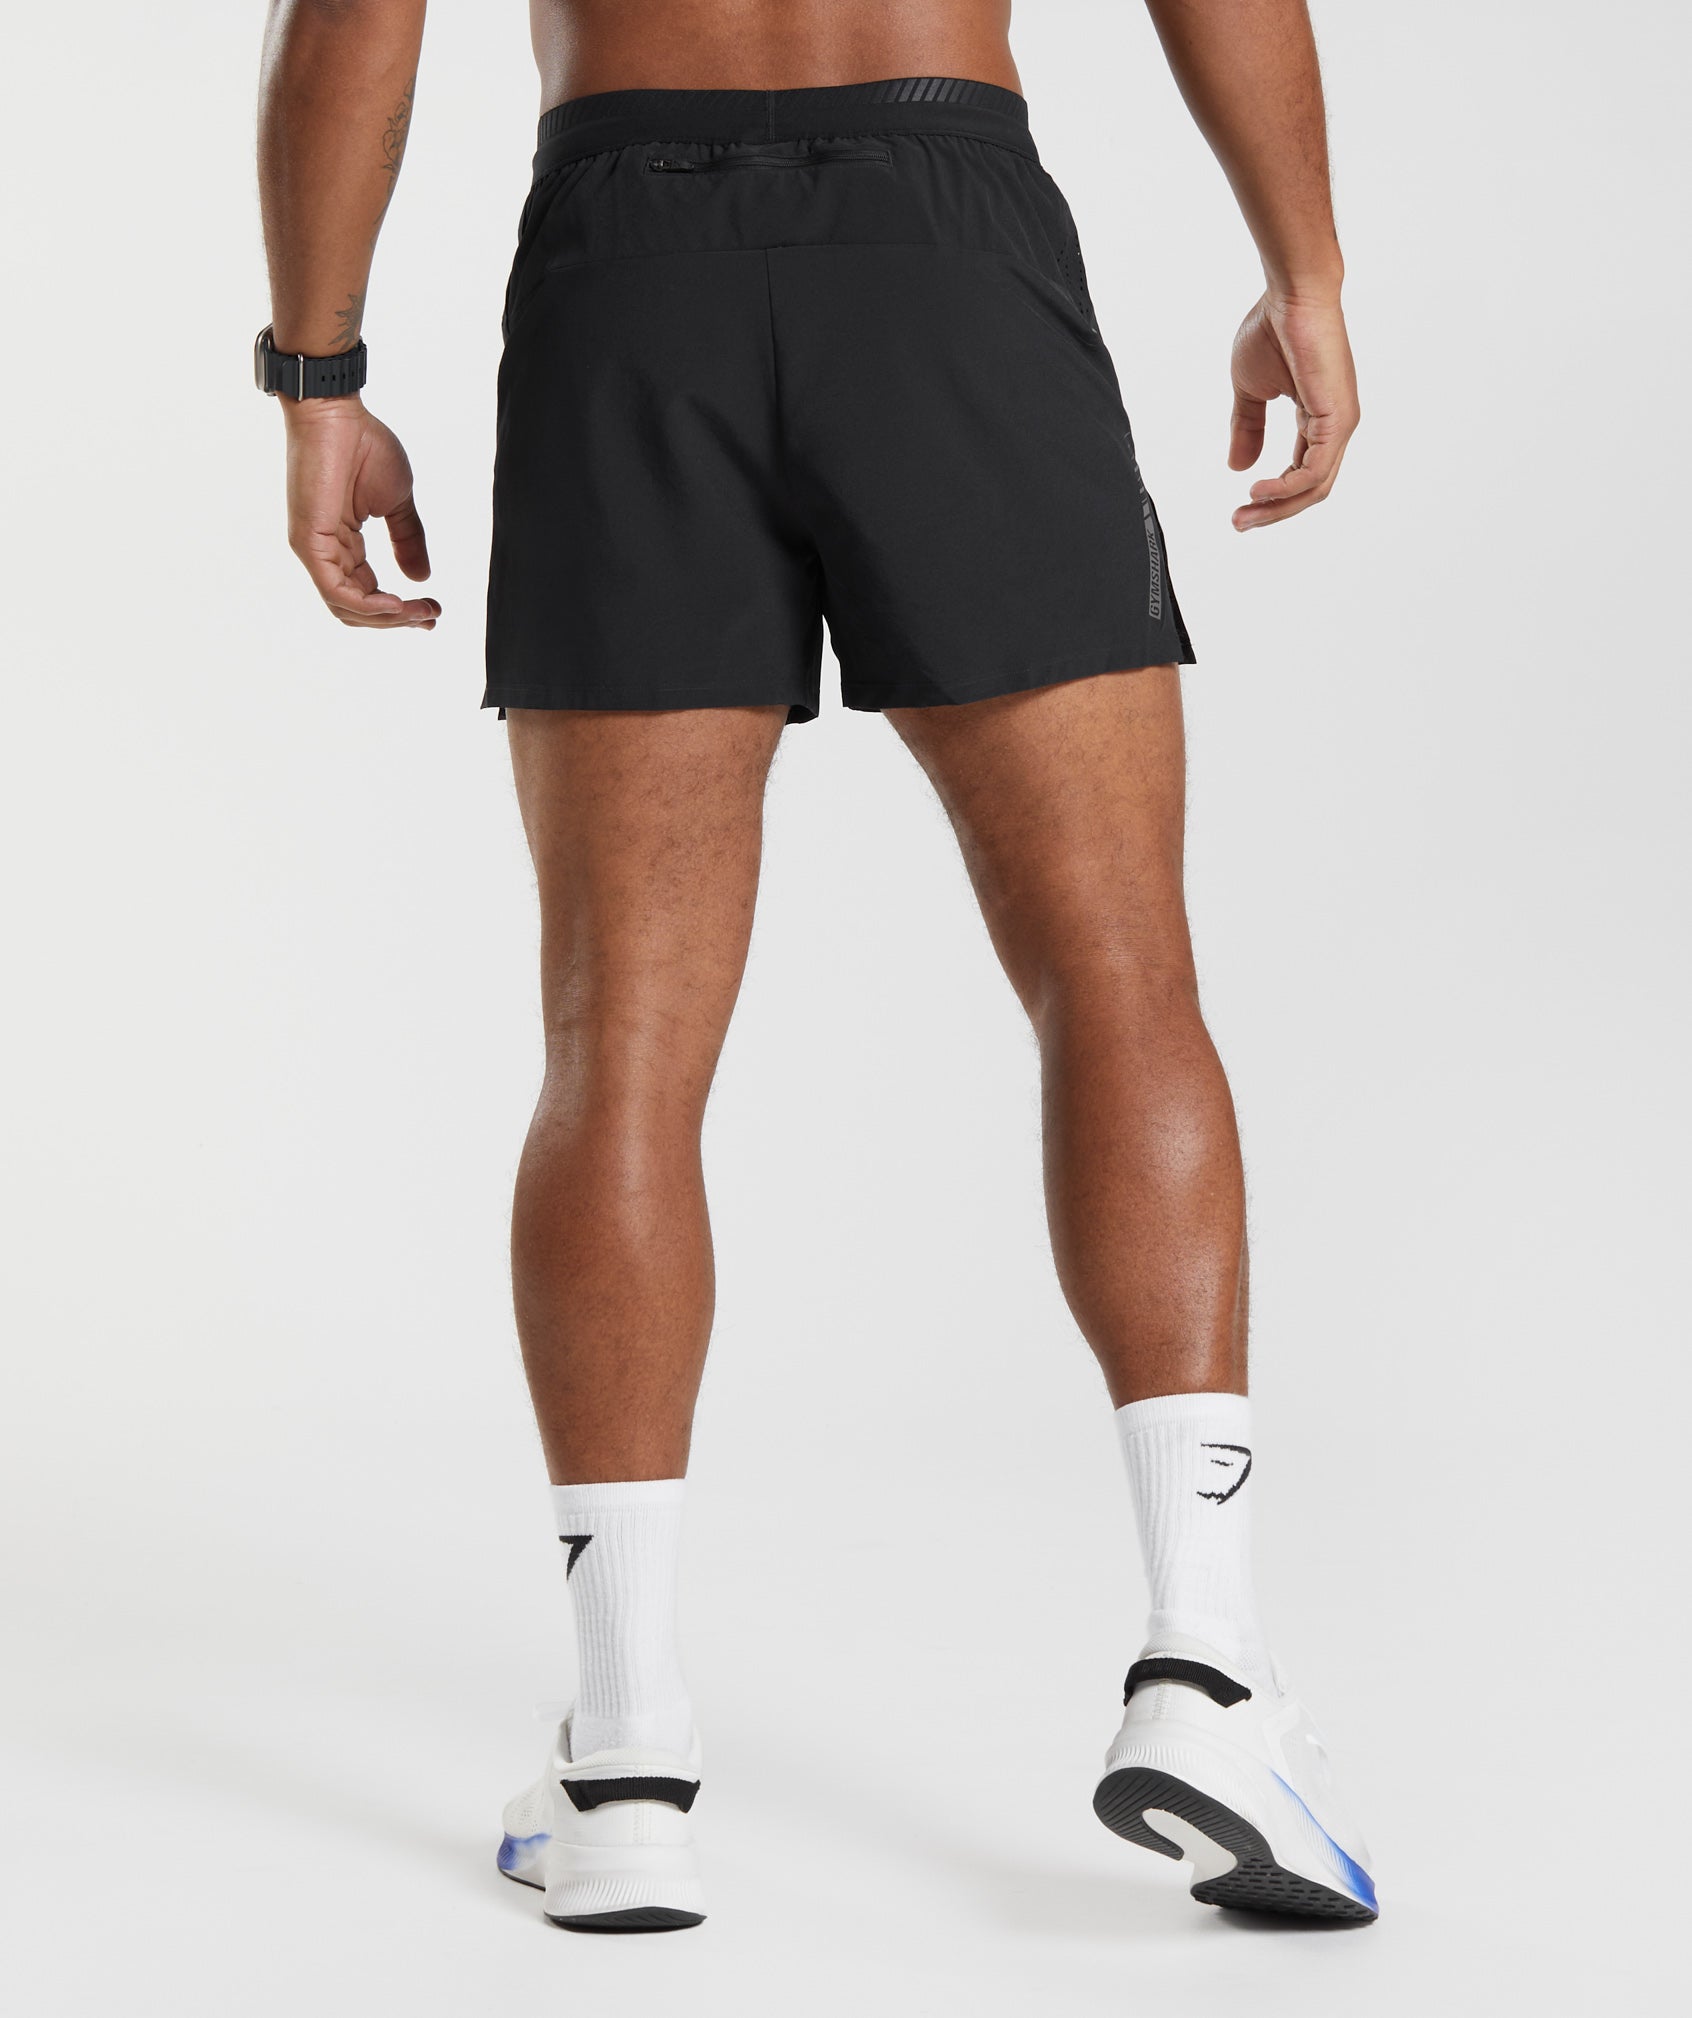 Gymshark Black Athletic Shorts for Men